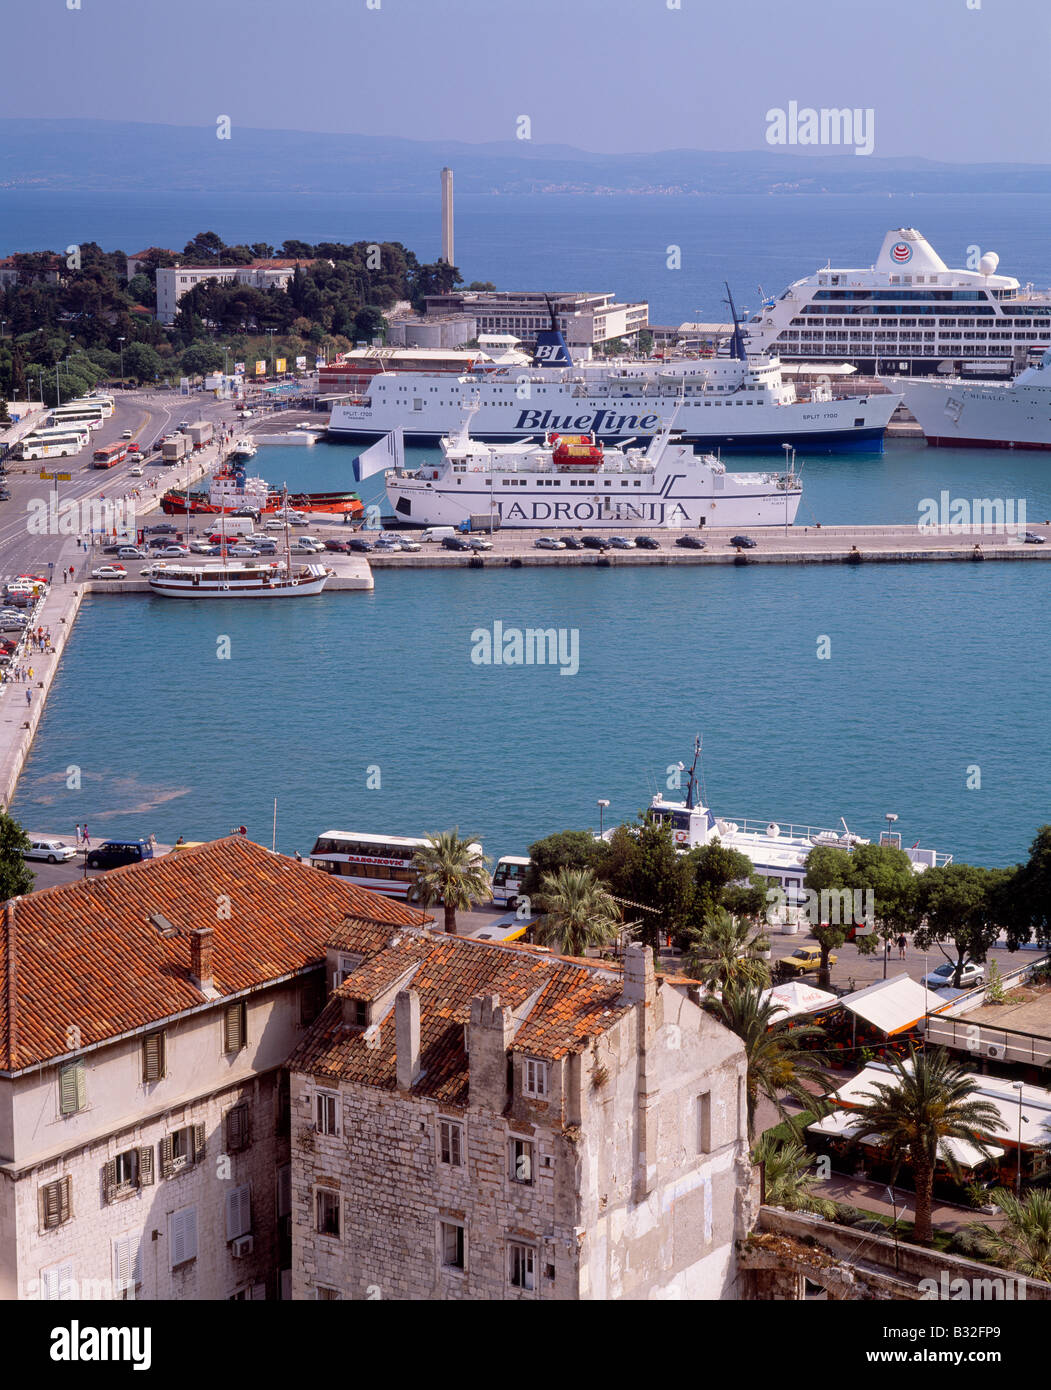 Porto di Spalato, Dalmazia, Croazia. Crociera e linea Jadrolinija visto dal  campanile della cattedrale Foto stock - Alamy